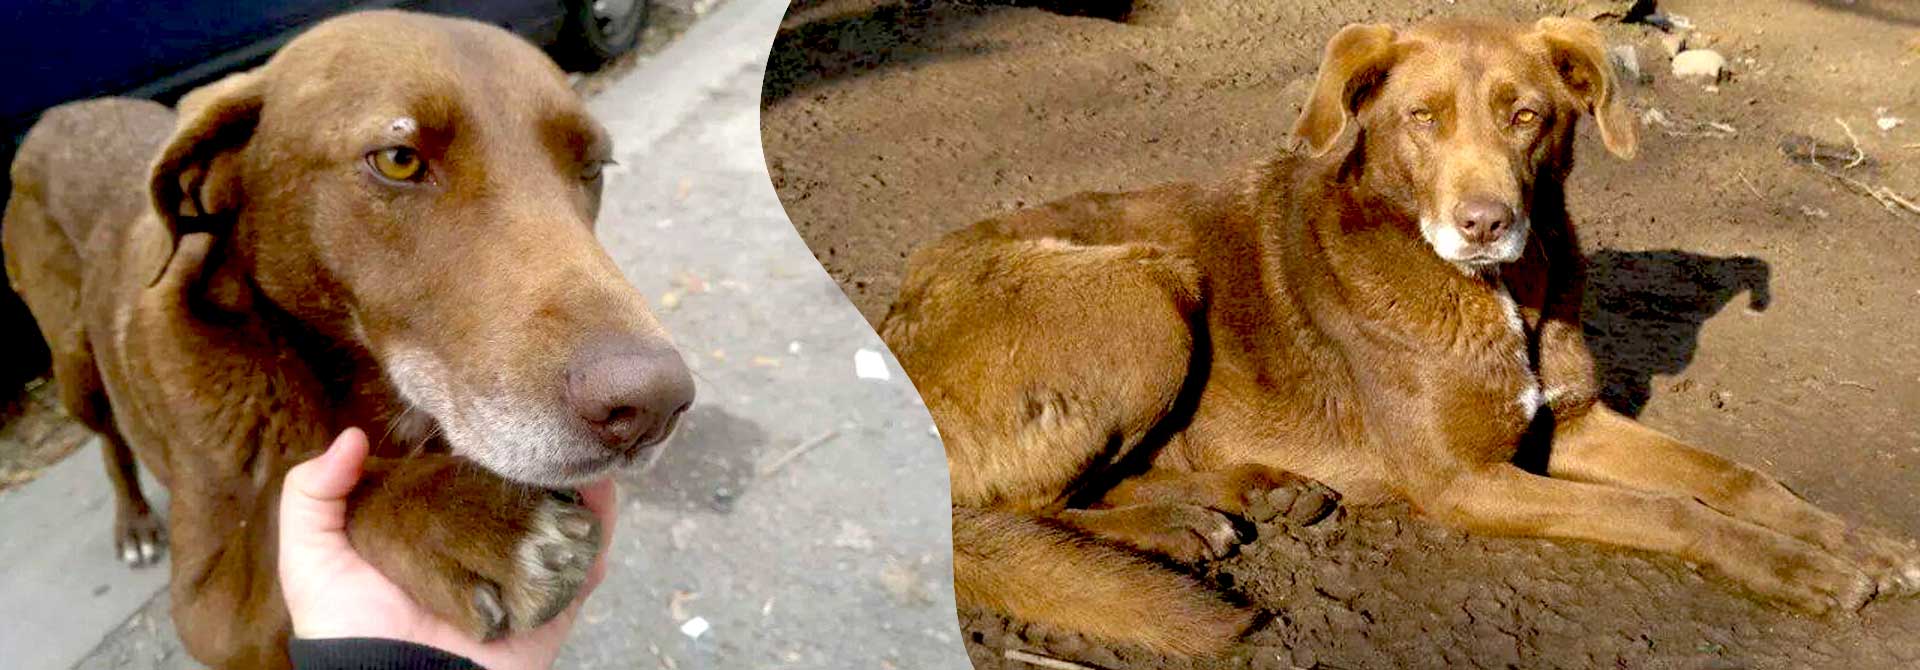 Emma Bulgarien World of Strays Welt der Straßenhunde Street dogs Hunde